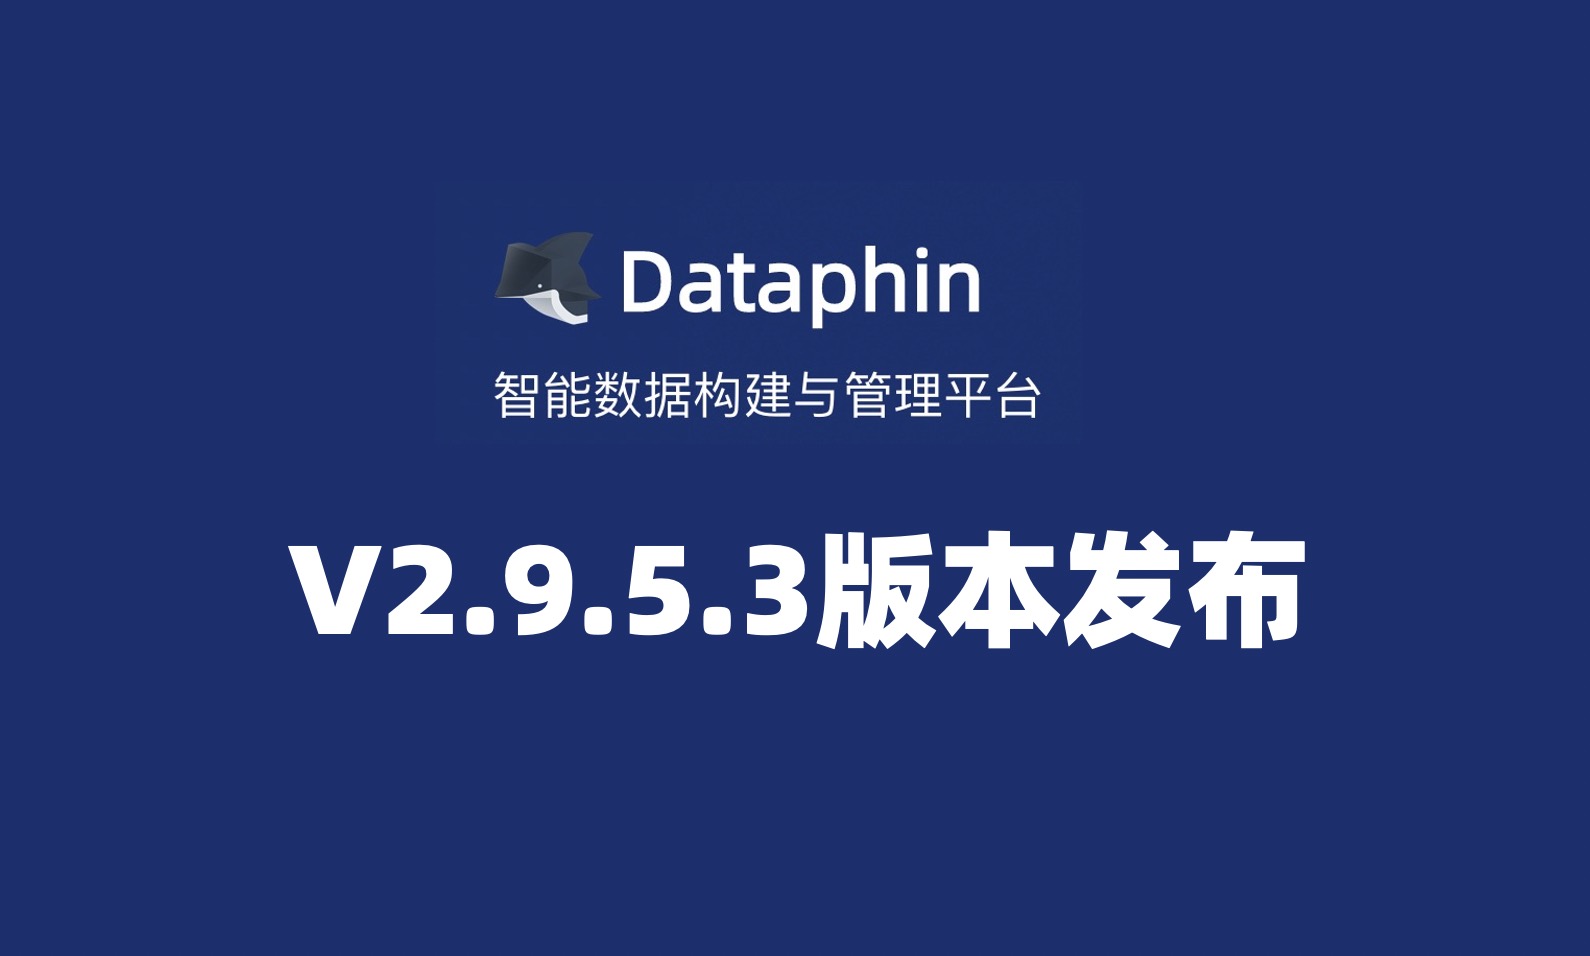 Dataphin V2.9.5.3版本发布，进行语法拓展、进一步打通企业邮箱系统、支持海量节点一键补数